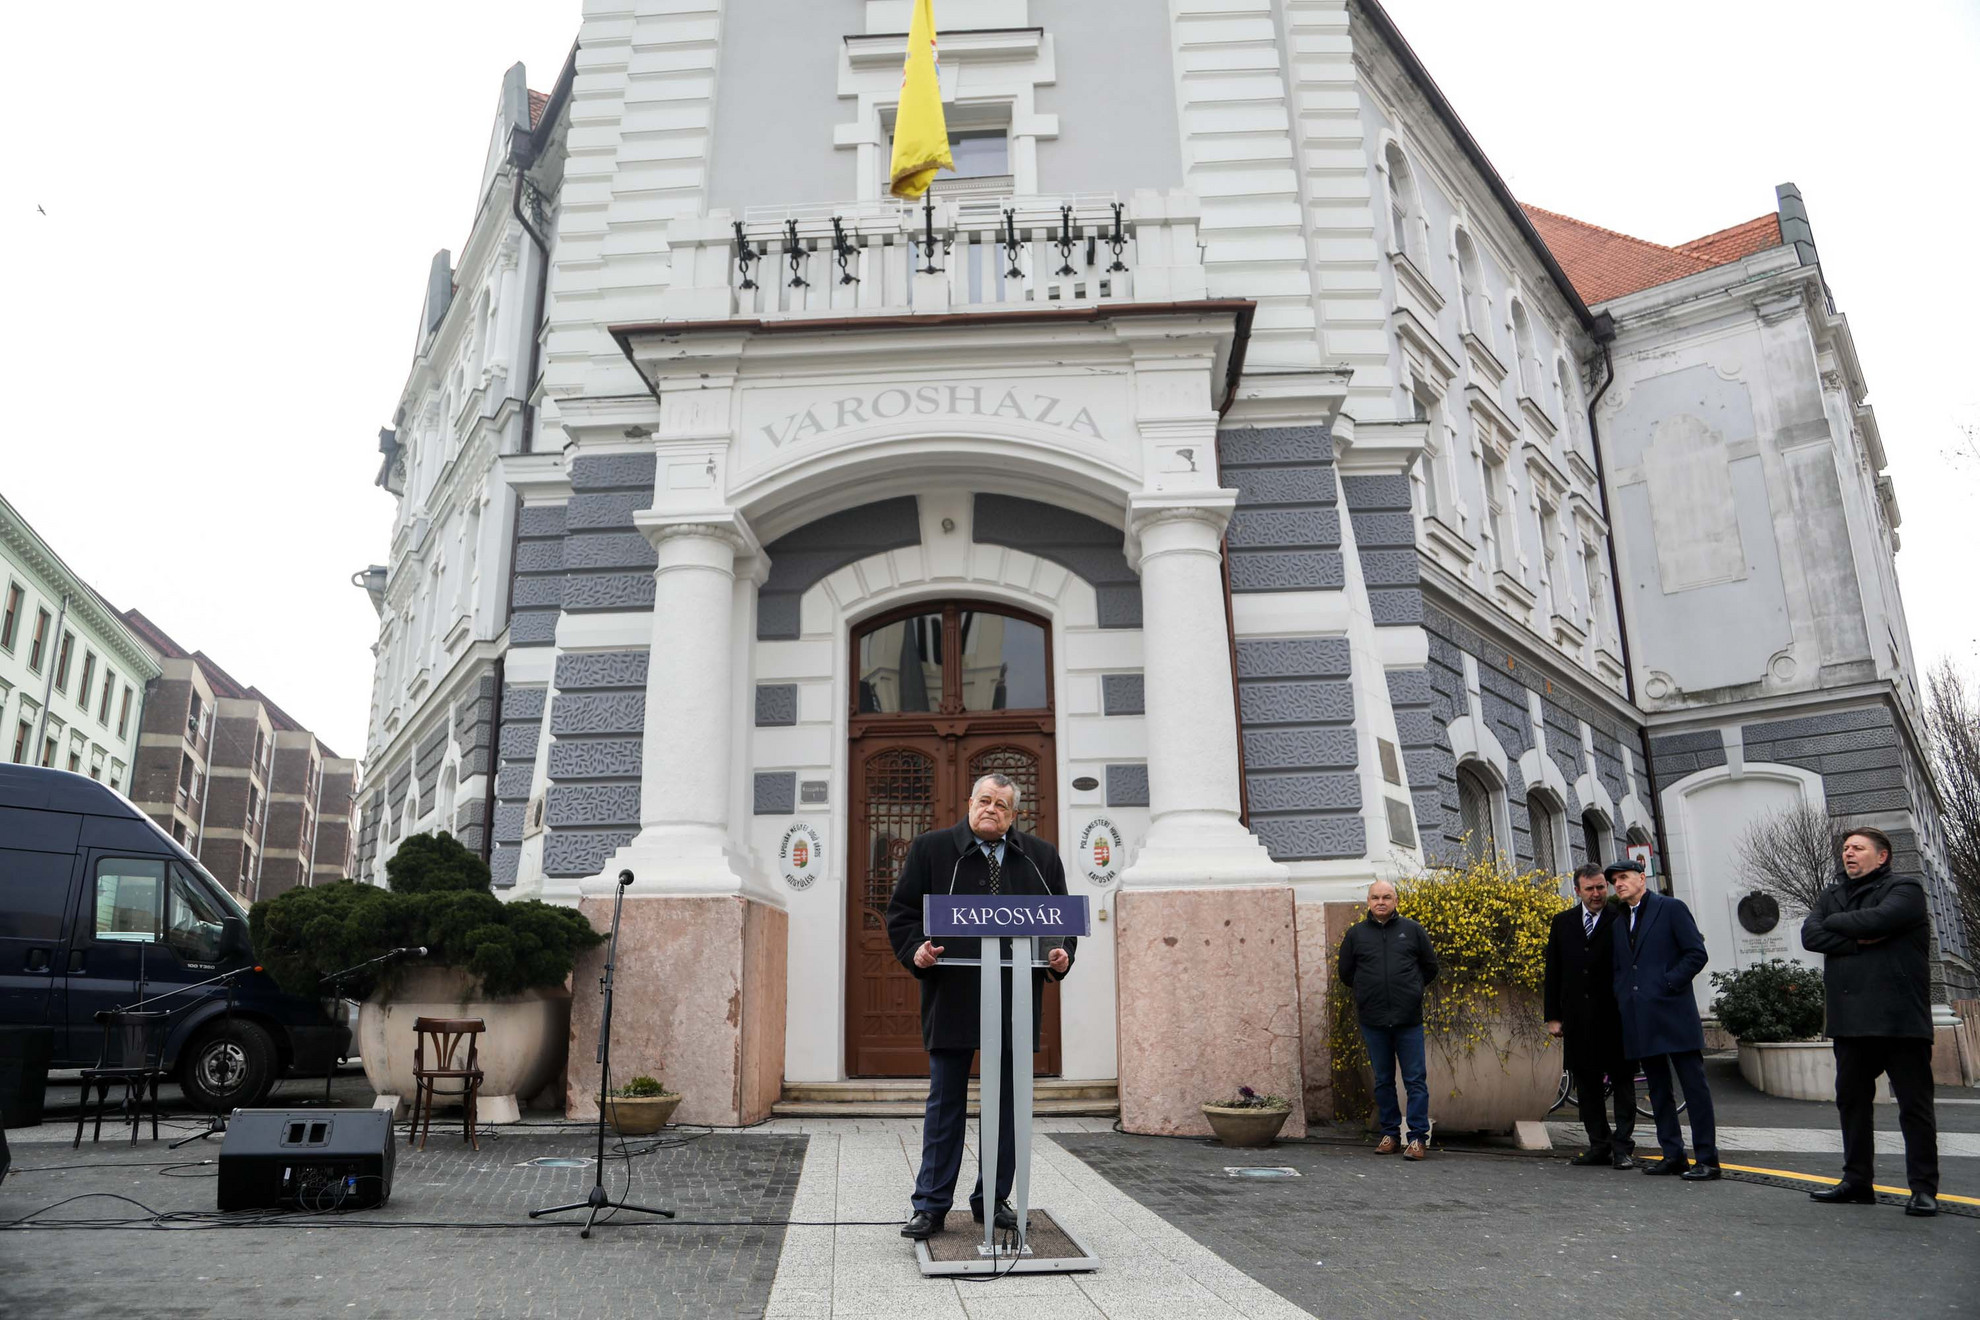 Széles Gábor nagyvállalkozó, a Videoton és Ikarus elnök-tulajdonosa beszédet mond Kaposváron a Kossuth téren az átadás napján, 2022. március 5-én